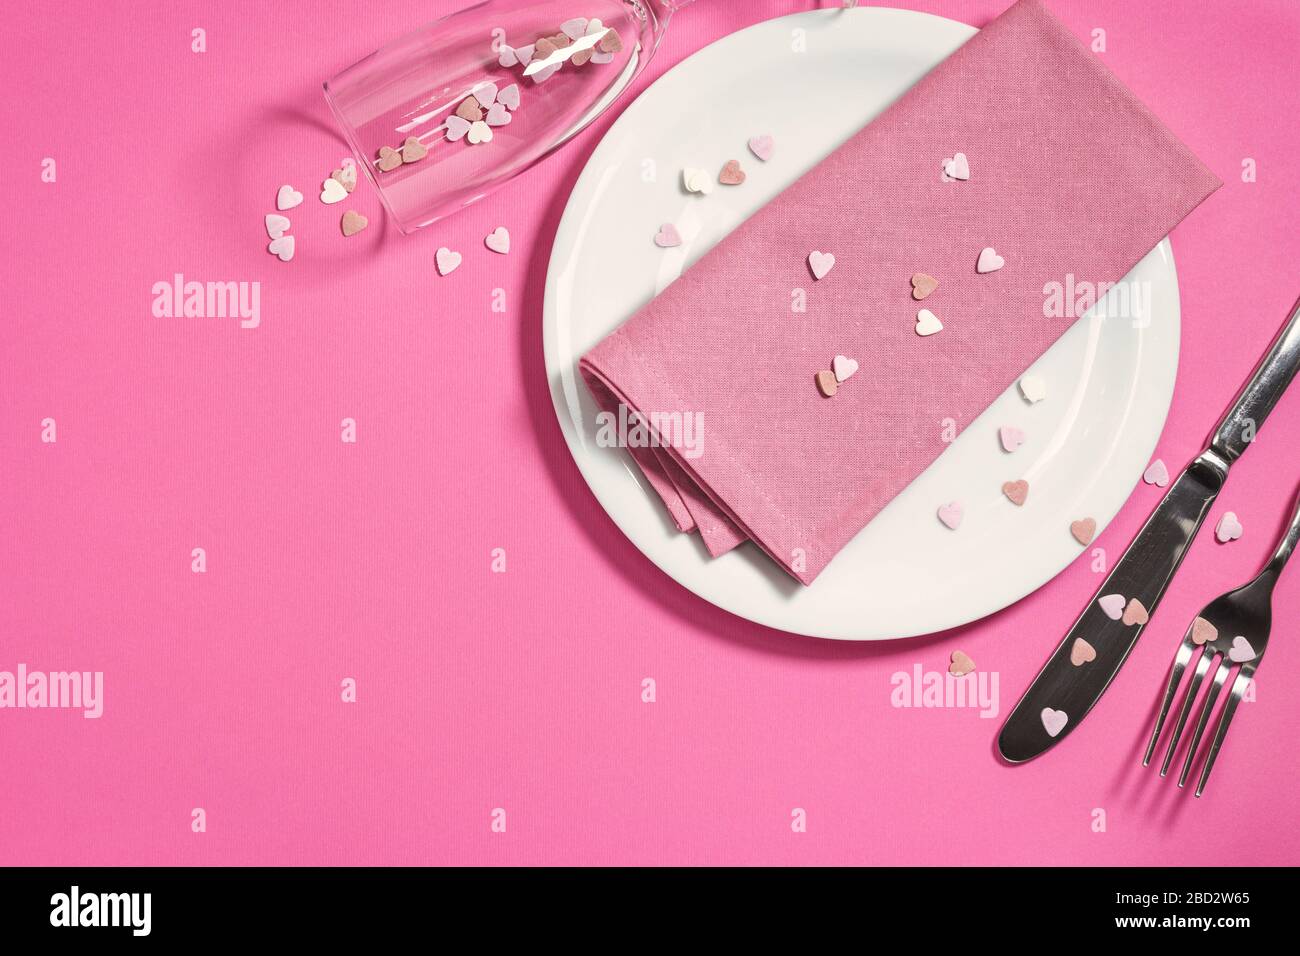 Magnifique table festive avec plaque blanche, serviette et décoration coeurs sur fond rose clair. Vue de dessus avec espace de copie. Banque D'Images